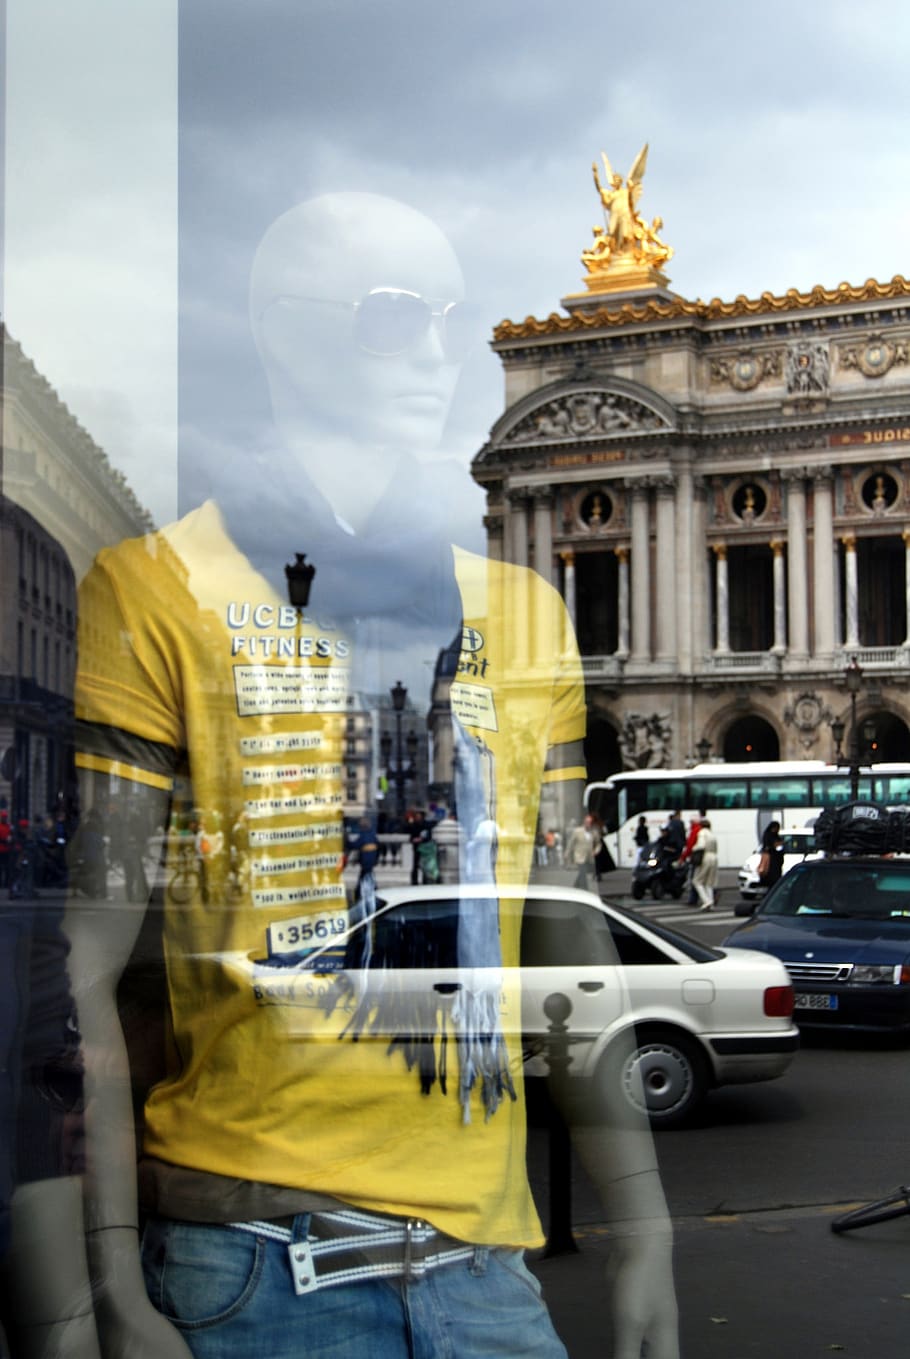 reflexiones, efecto espejo, maniquí, modo, tienda, edificio antiguo, estatua de oro, París, Francia, vidrio